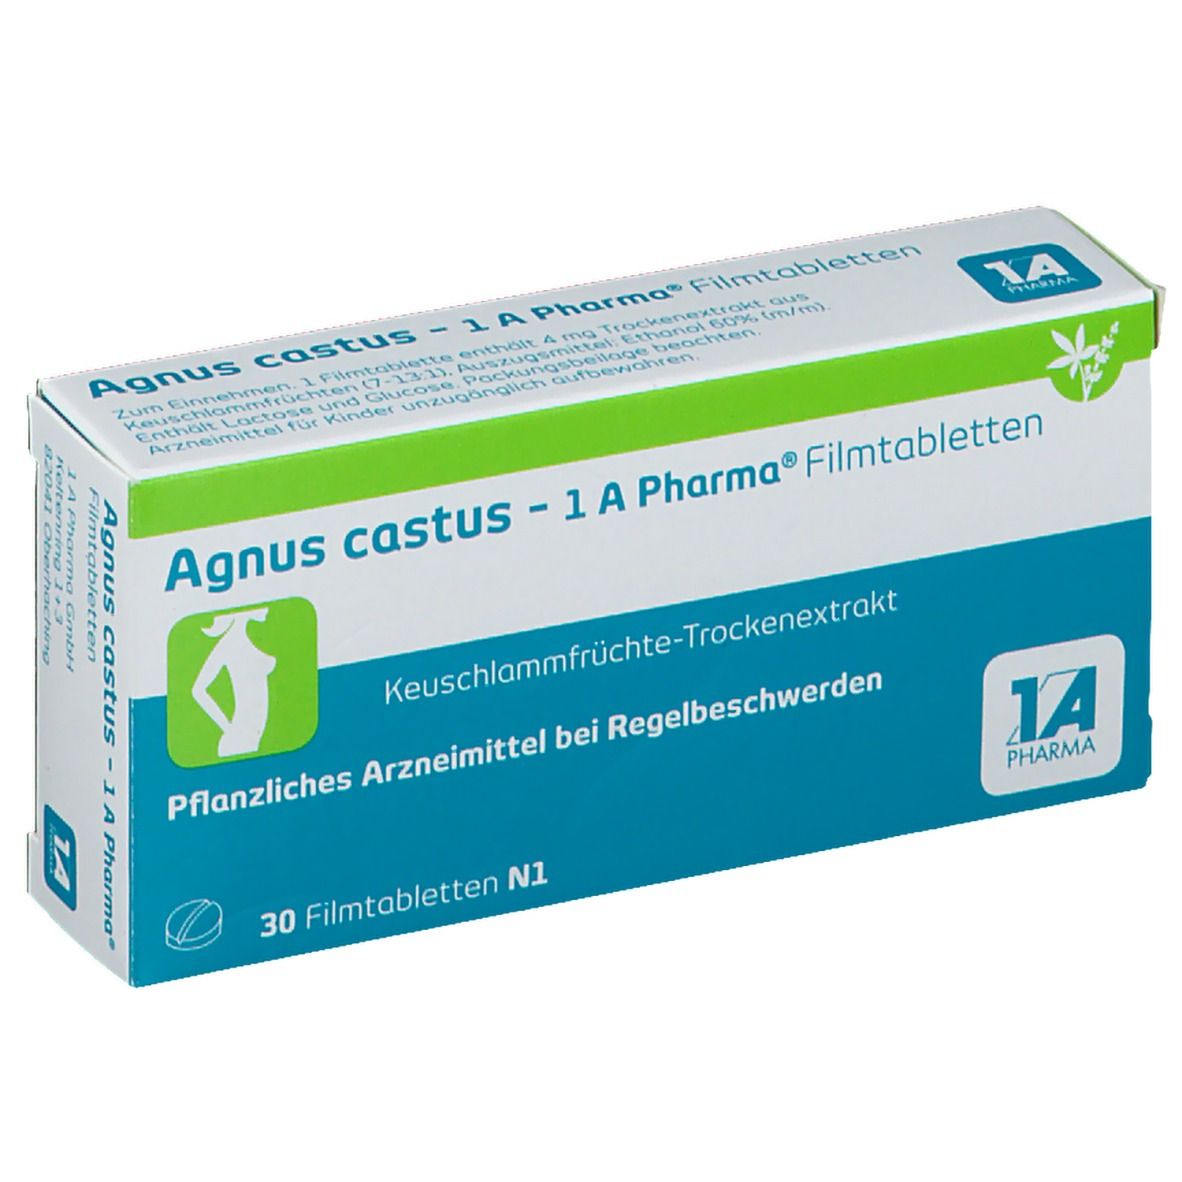 Agnus castus - 1 A Pharma®